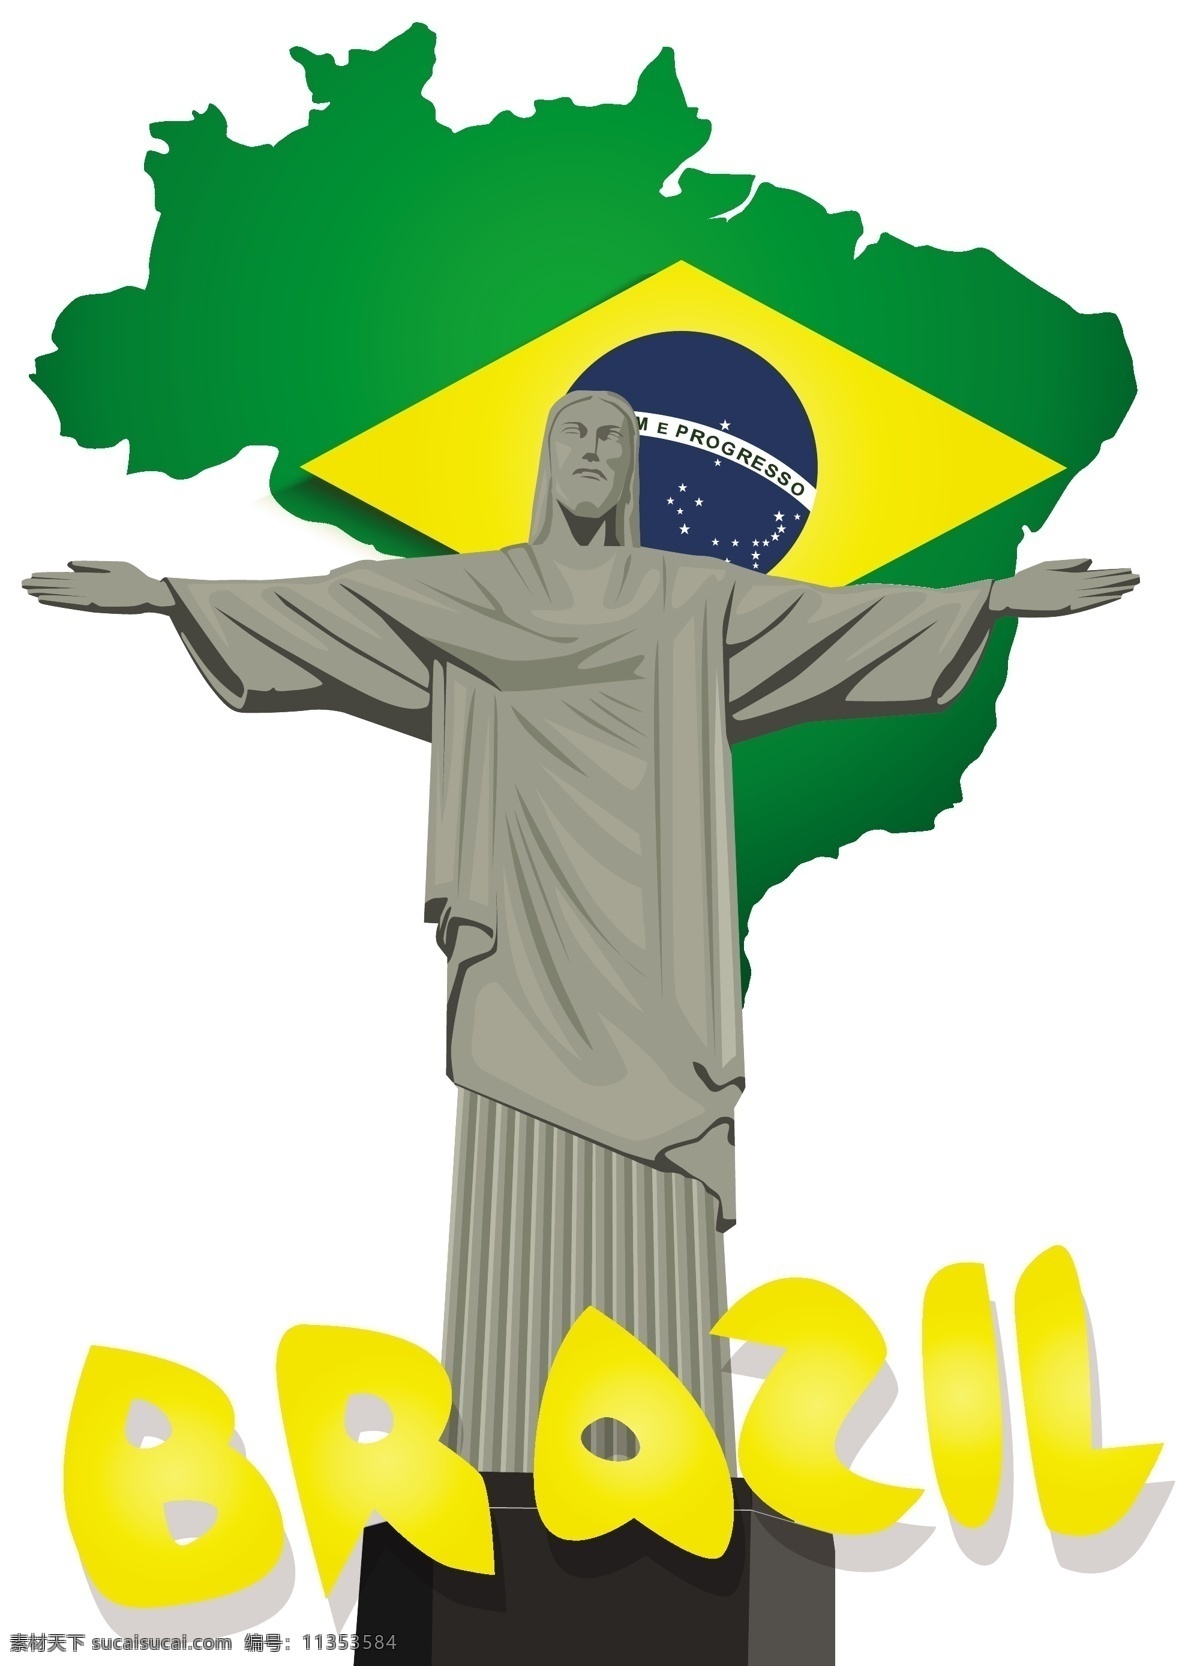 巴西 地图 神父 背景 模板下载 神父雕像 世界杯 足球 体育运动 生活百科 矢量素材 白色